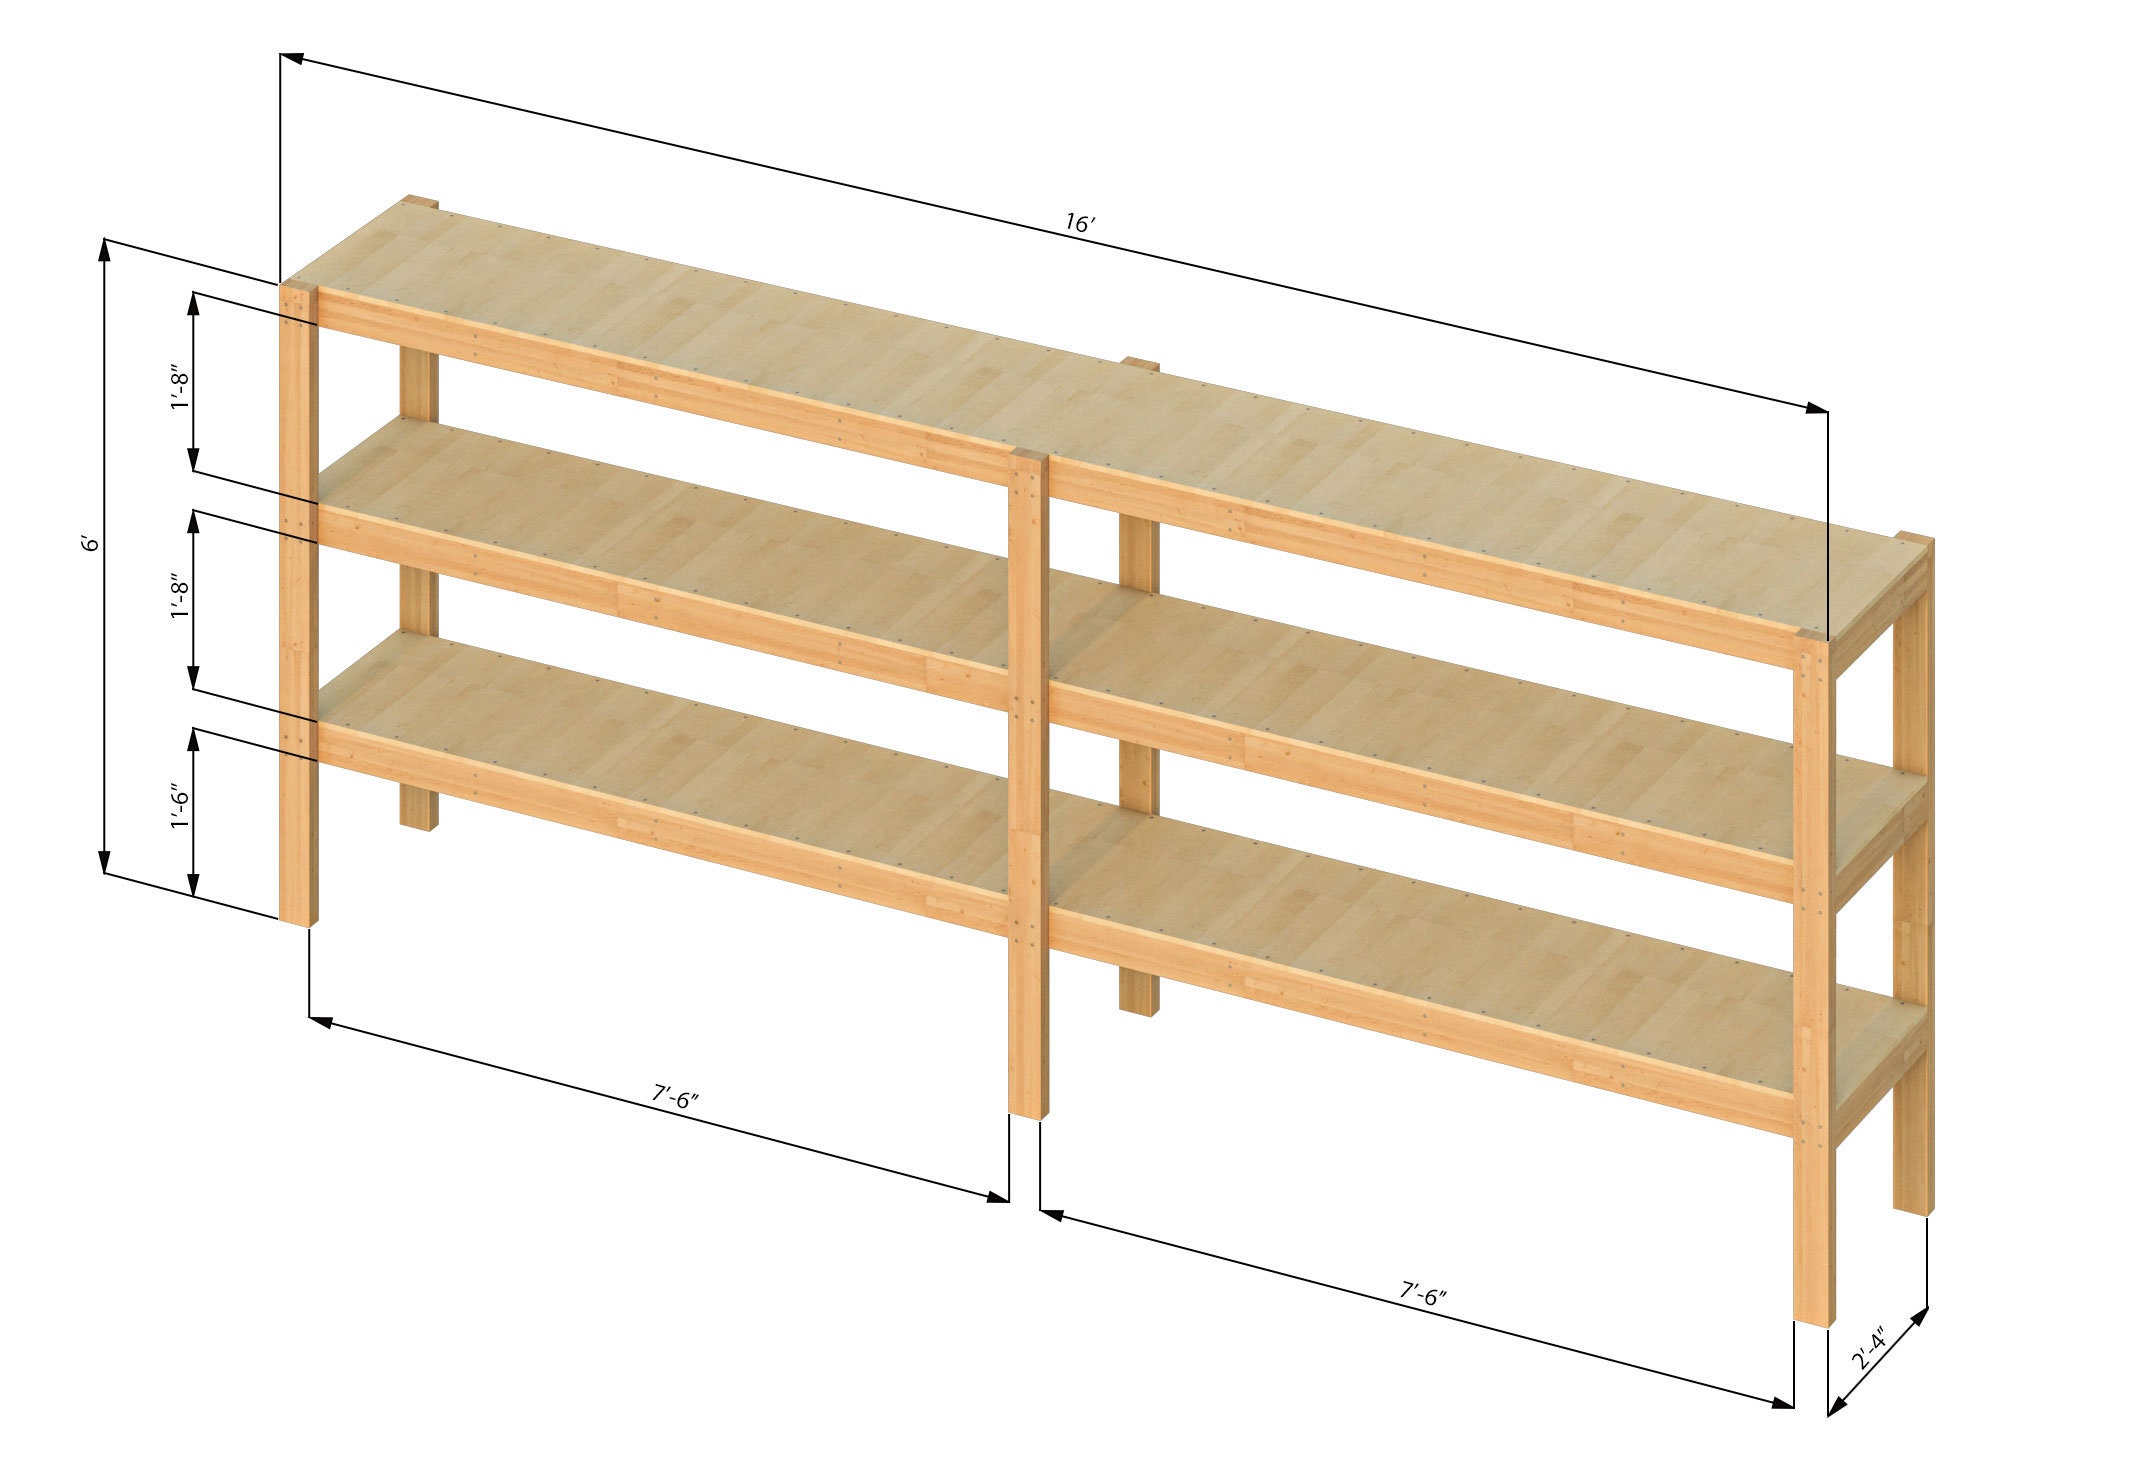 2x16 Two-bay Garage Storage Shelves Plans PDF - Etsy